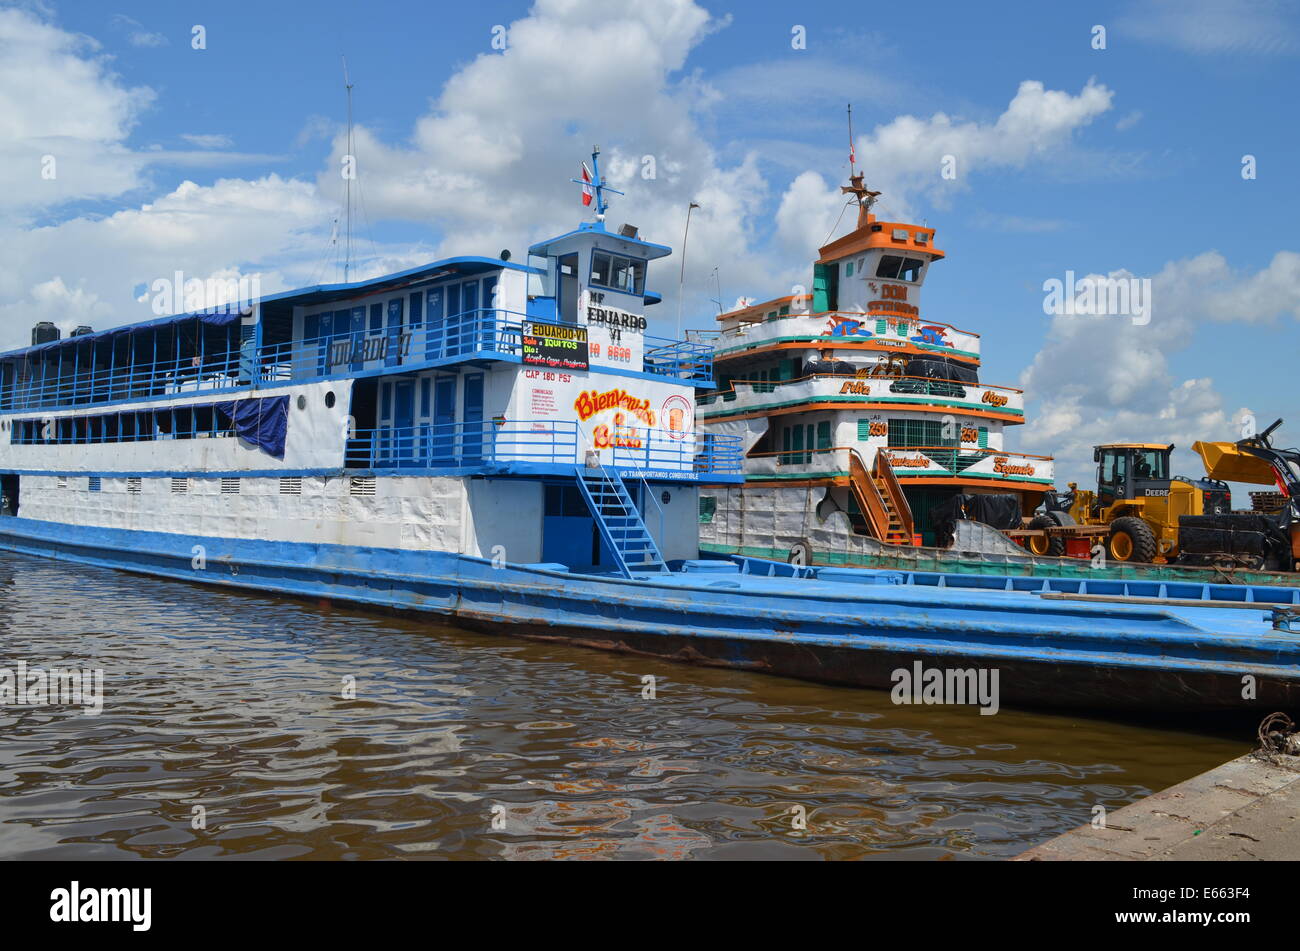 Ship on amazon river immagini e fotografie stock ad alta risoluzione - Alamy